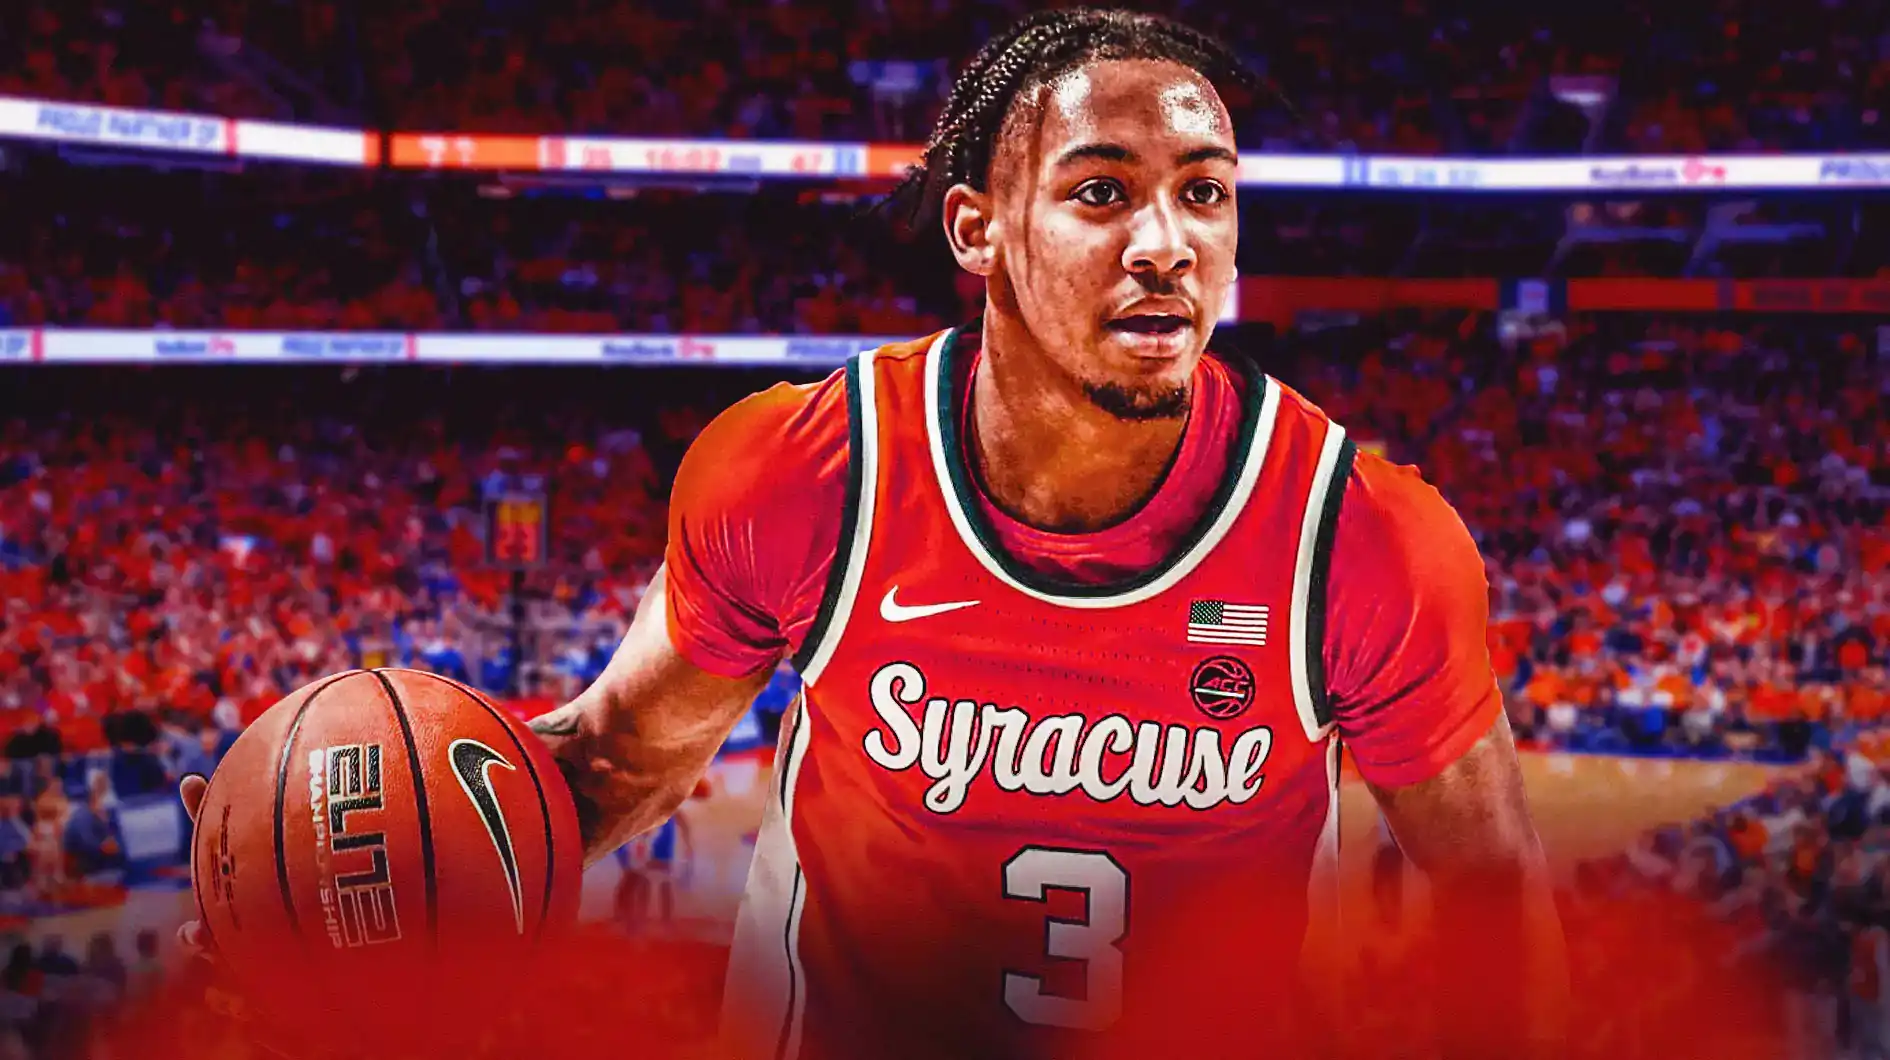 Syracuse baloncesto Carolina del Norte derriba a los fanáticos Judah Mintz stock